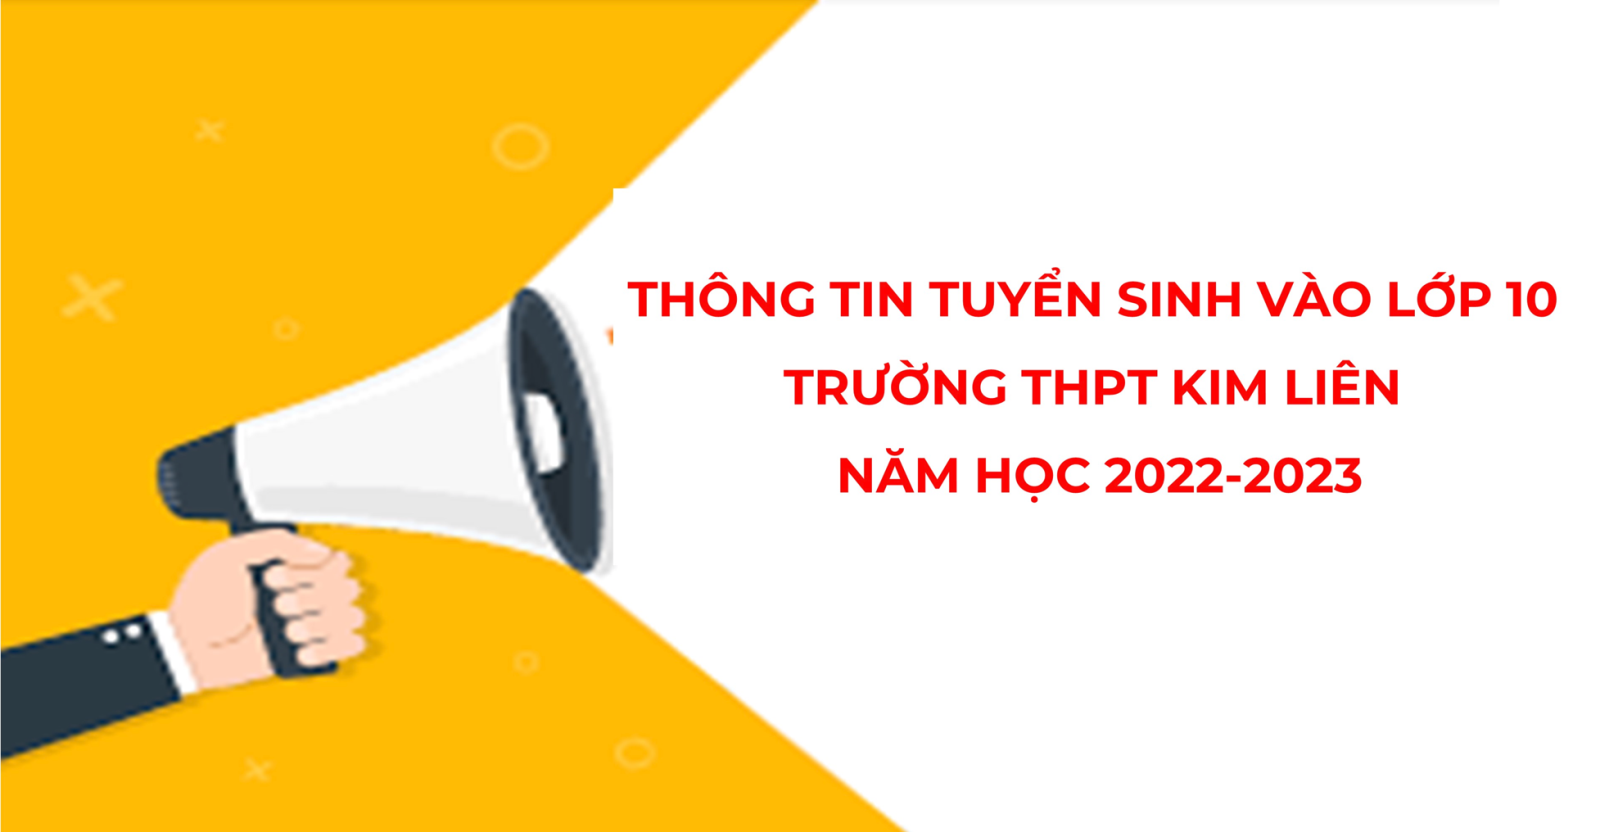 Thông tin tuyển sinh vào lớp 10 Trường THPT Kim Liên năm học 2022-2023